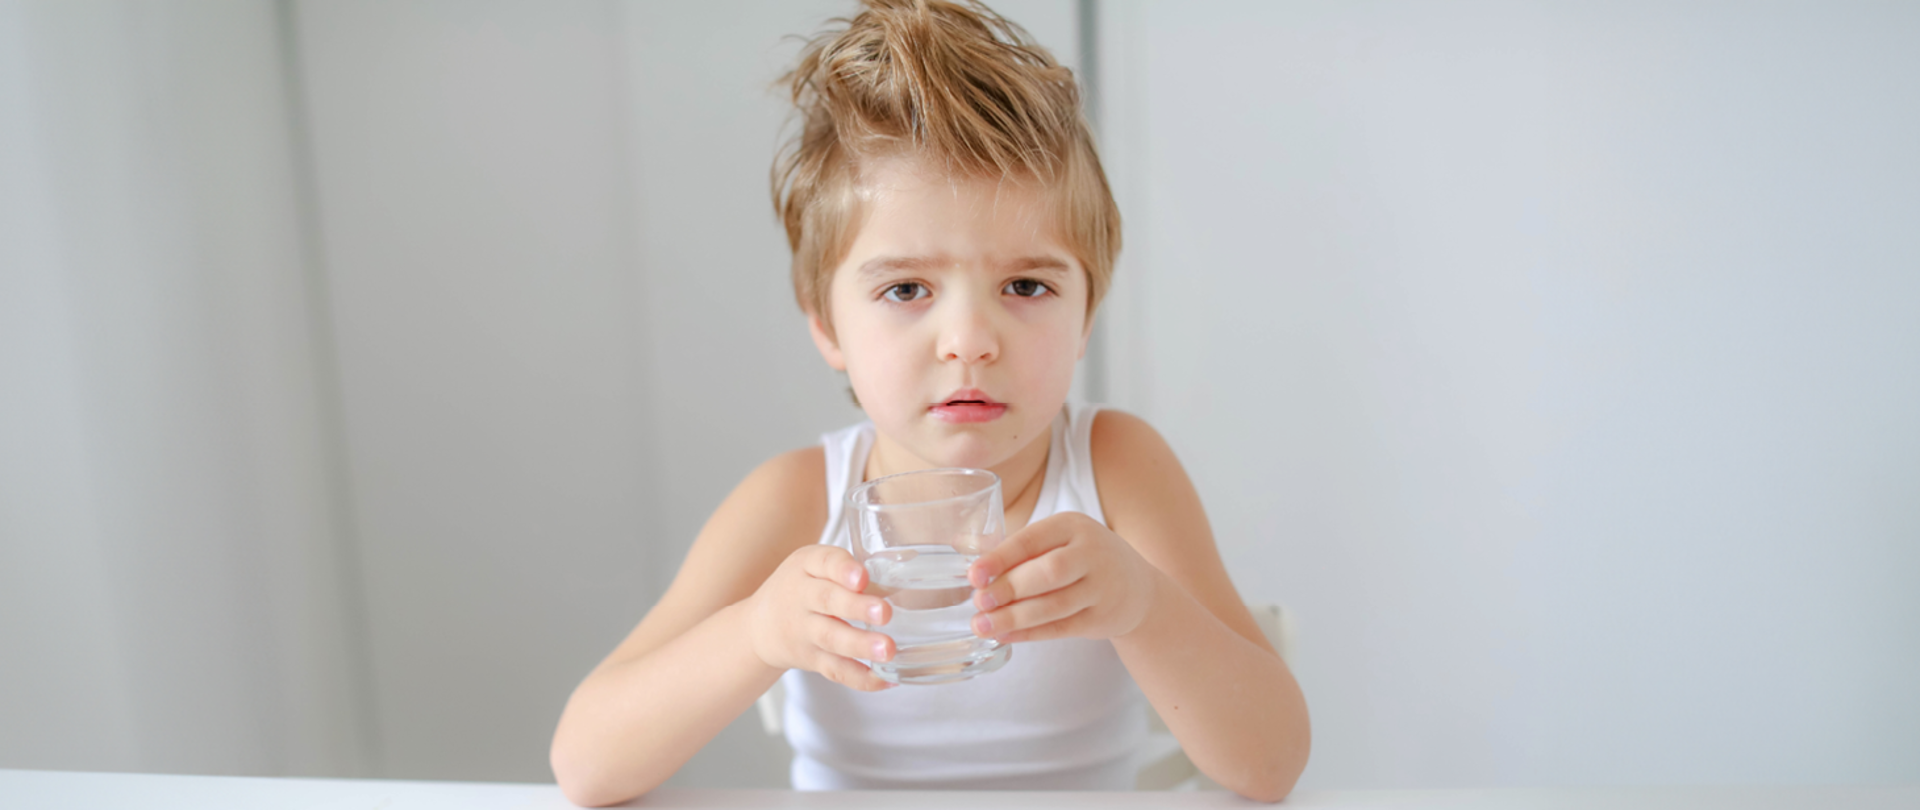 Na zdjęciu znajduje się chłopiec ze szklanką wody